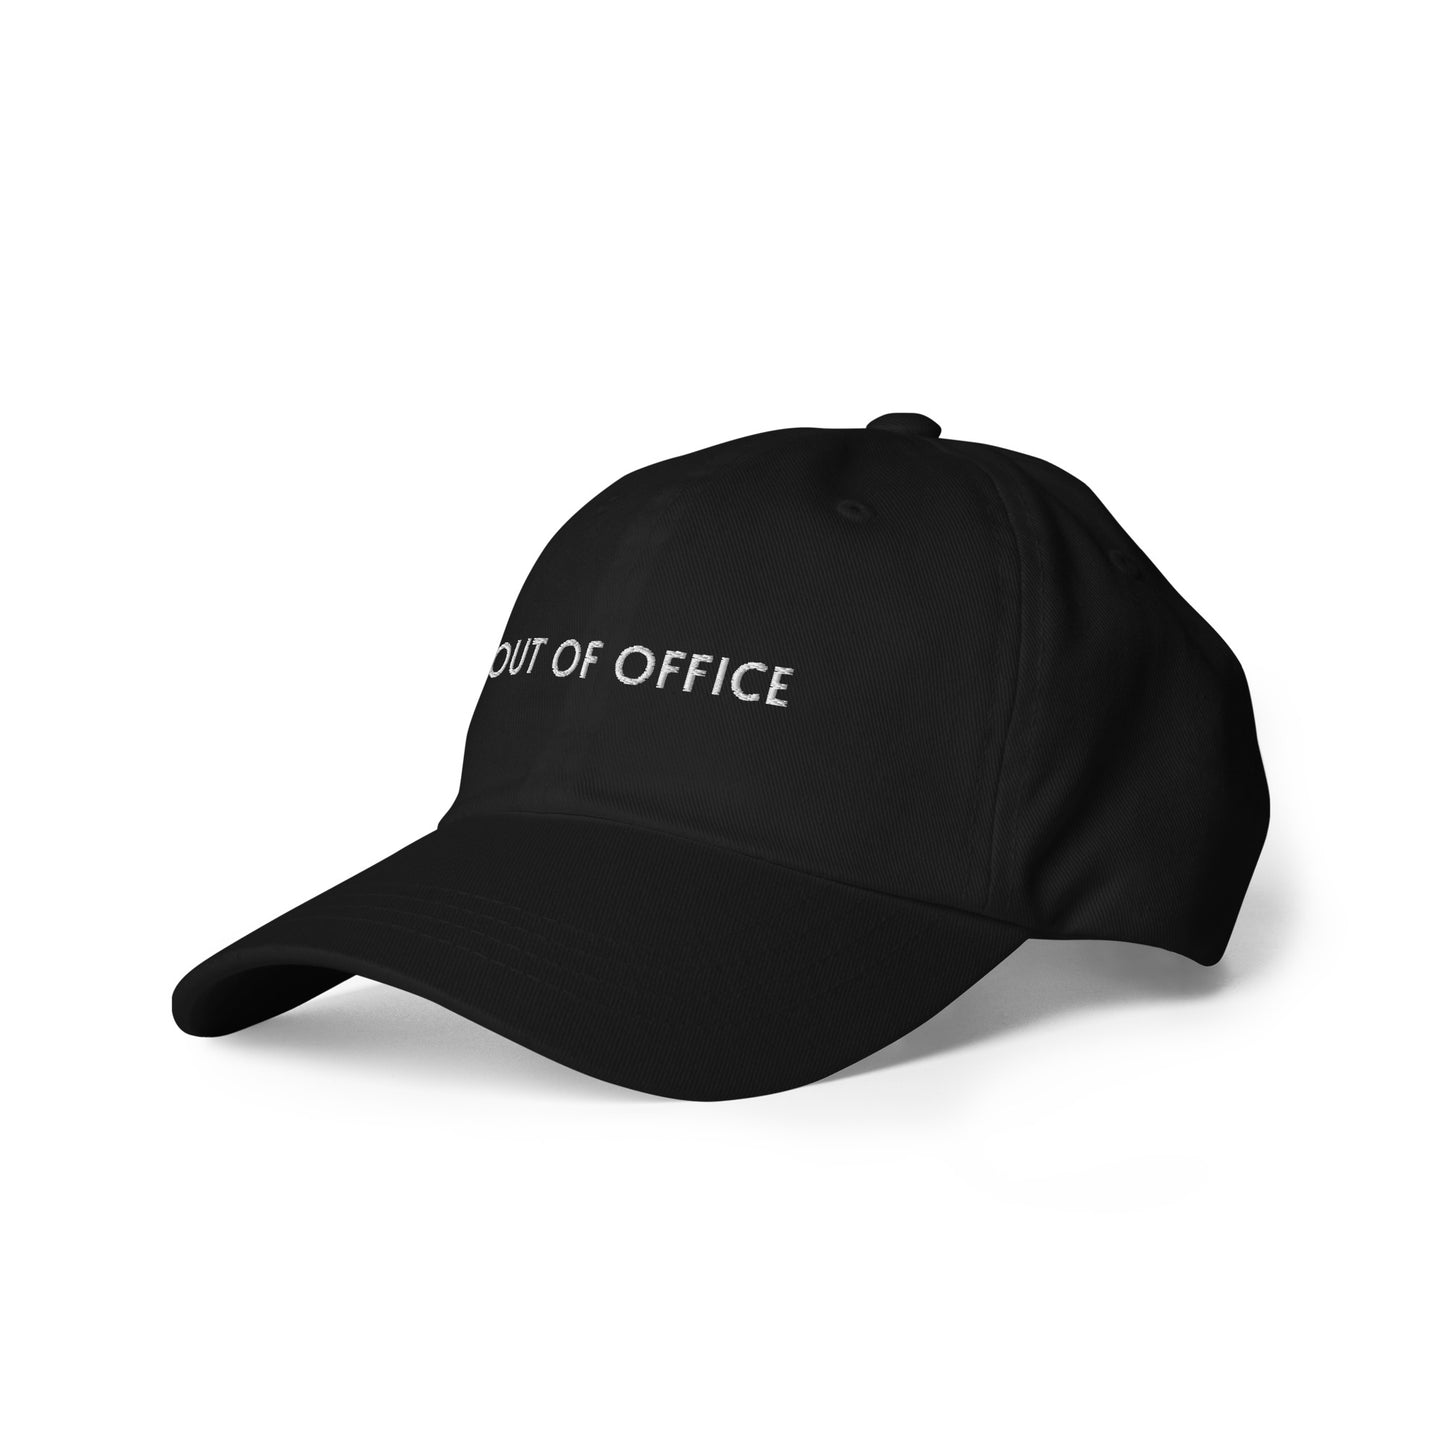 Bild einer Baseball-Cap mit dem witzigen Spruch 'OUT OF OFFICE' auf weißem Hintergrund. Lustiges Accessoire für Menschen im Homeoffice, die den Büroalltag hinter sich lassen wollen.